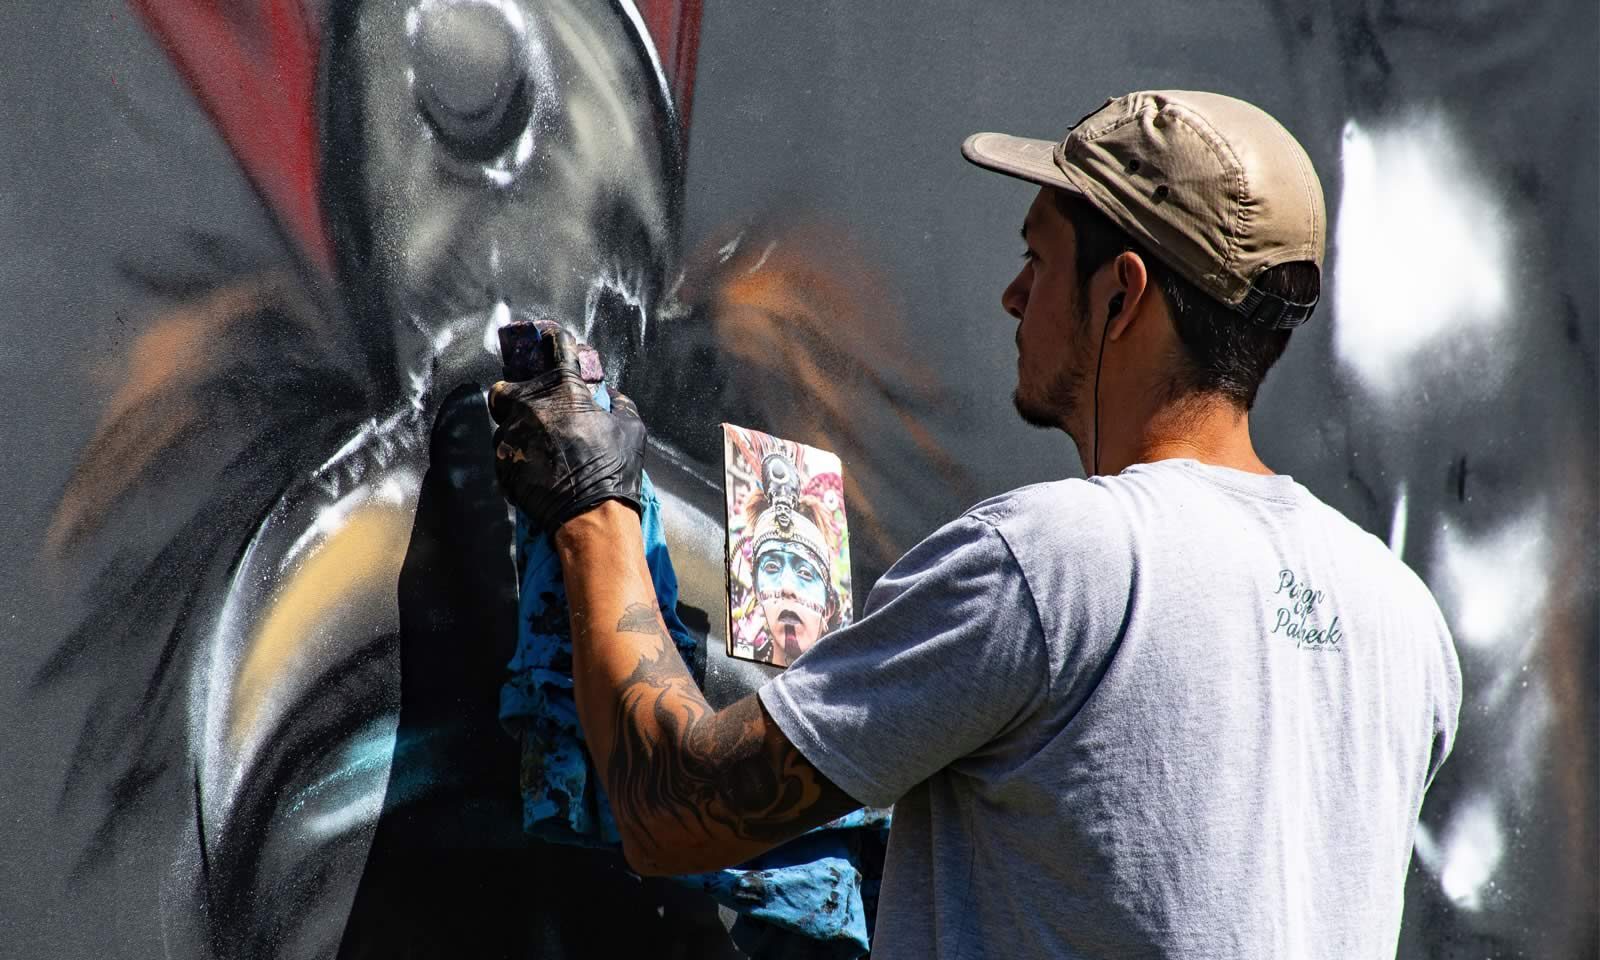 man spray painting